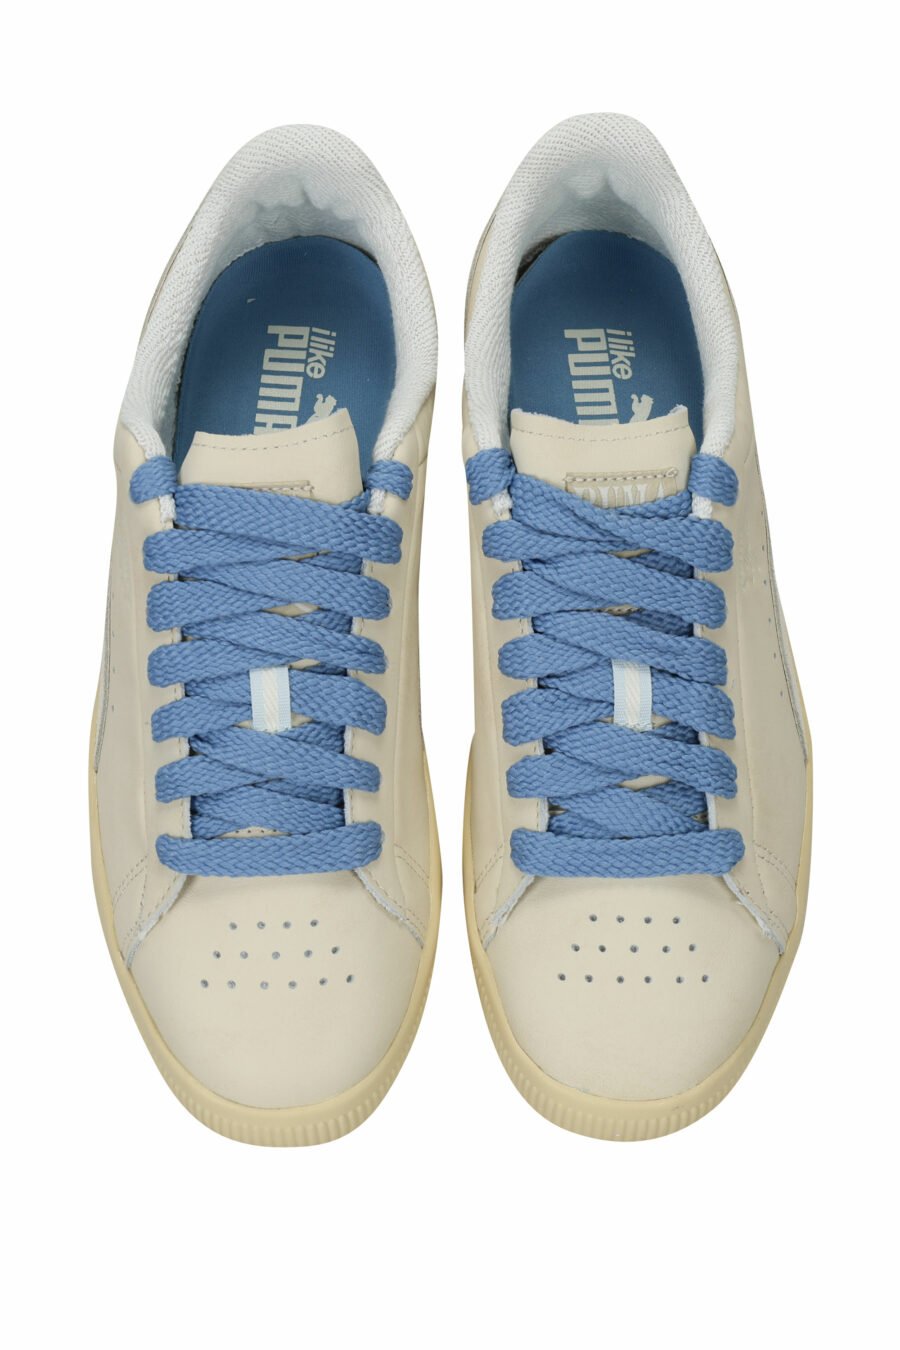 Zapatillas beige con azul "clyde" - 4099686340858 4